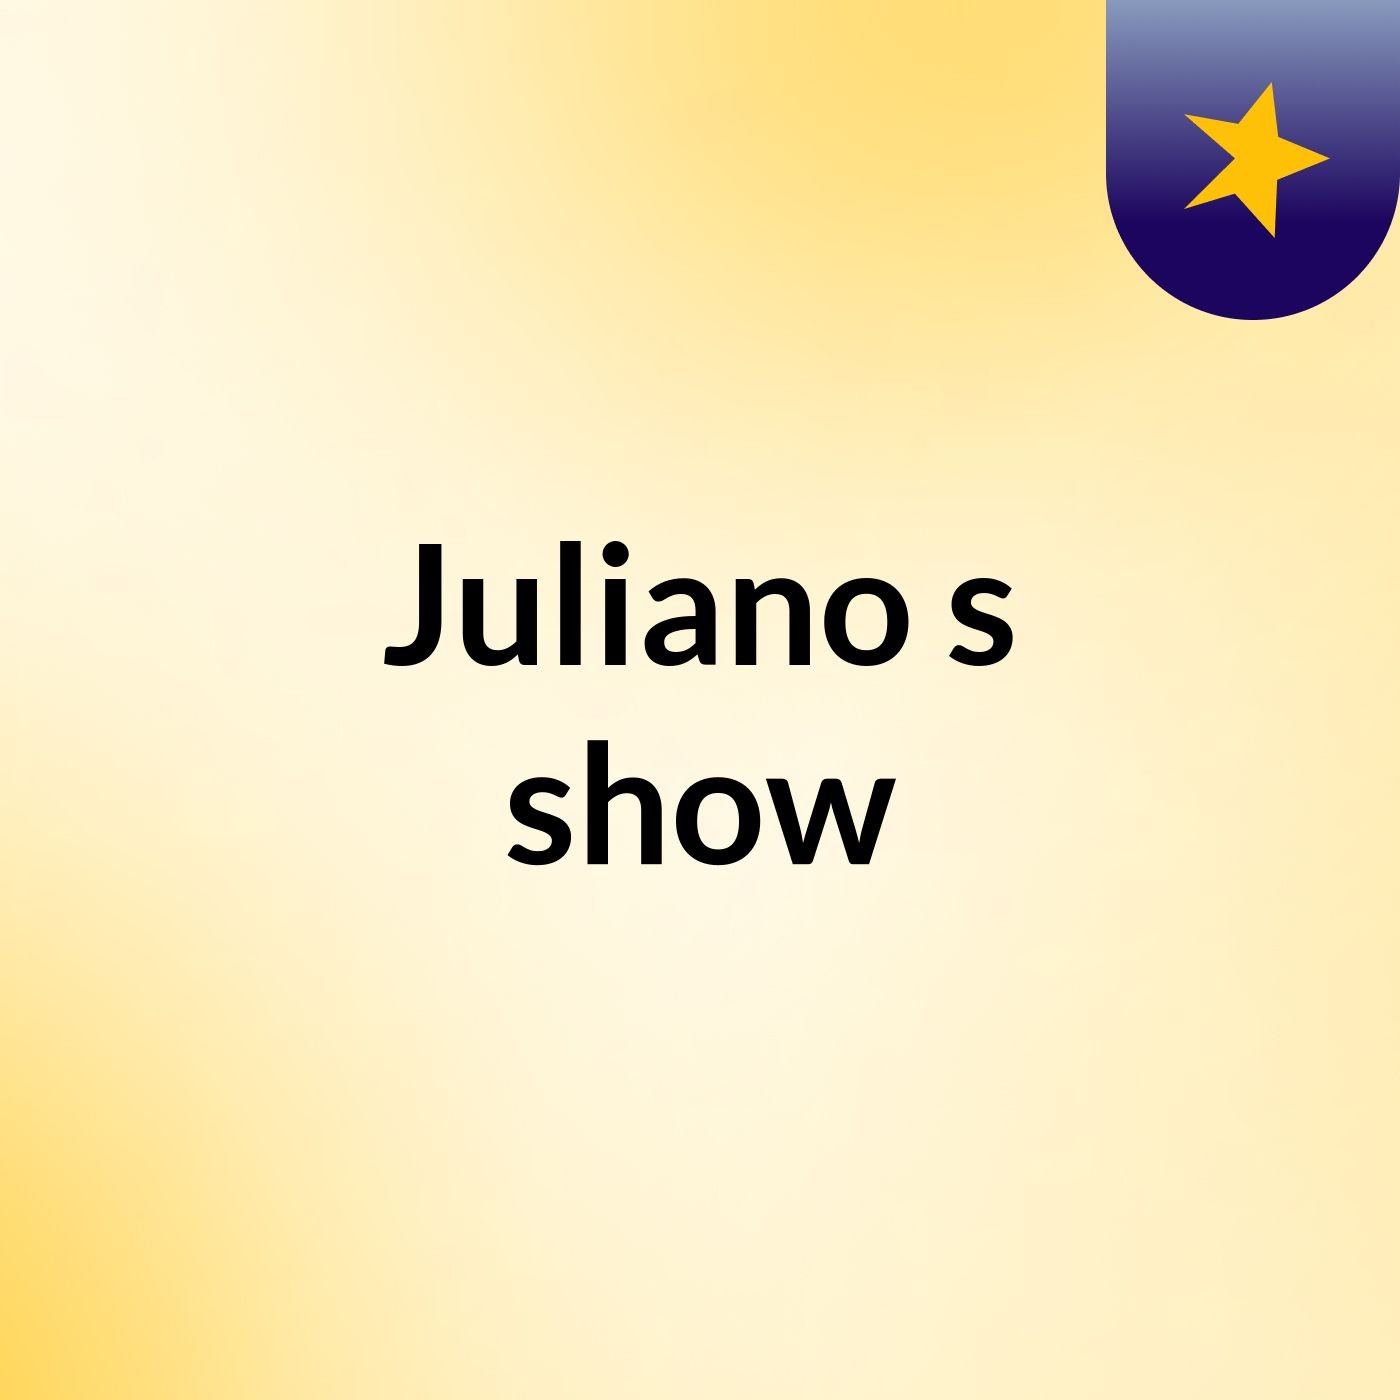 Juliano's show